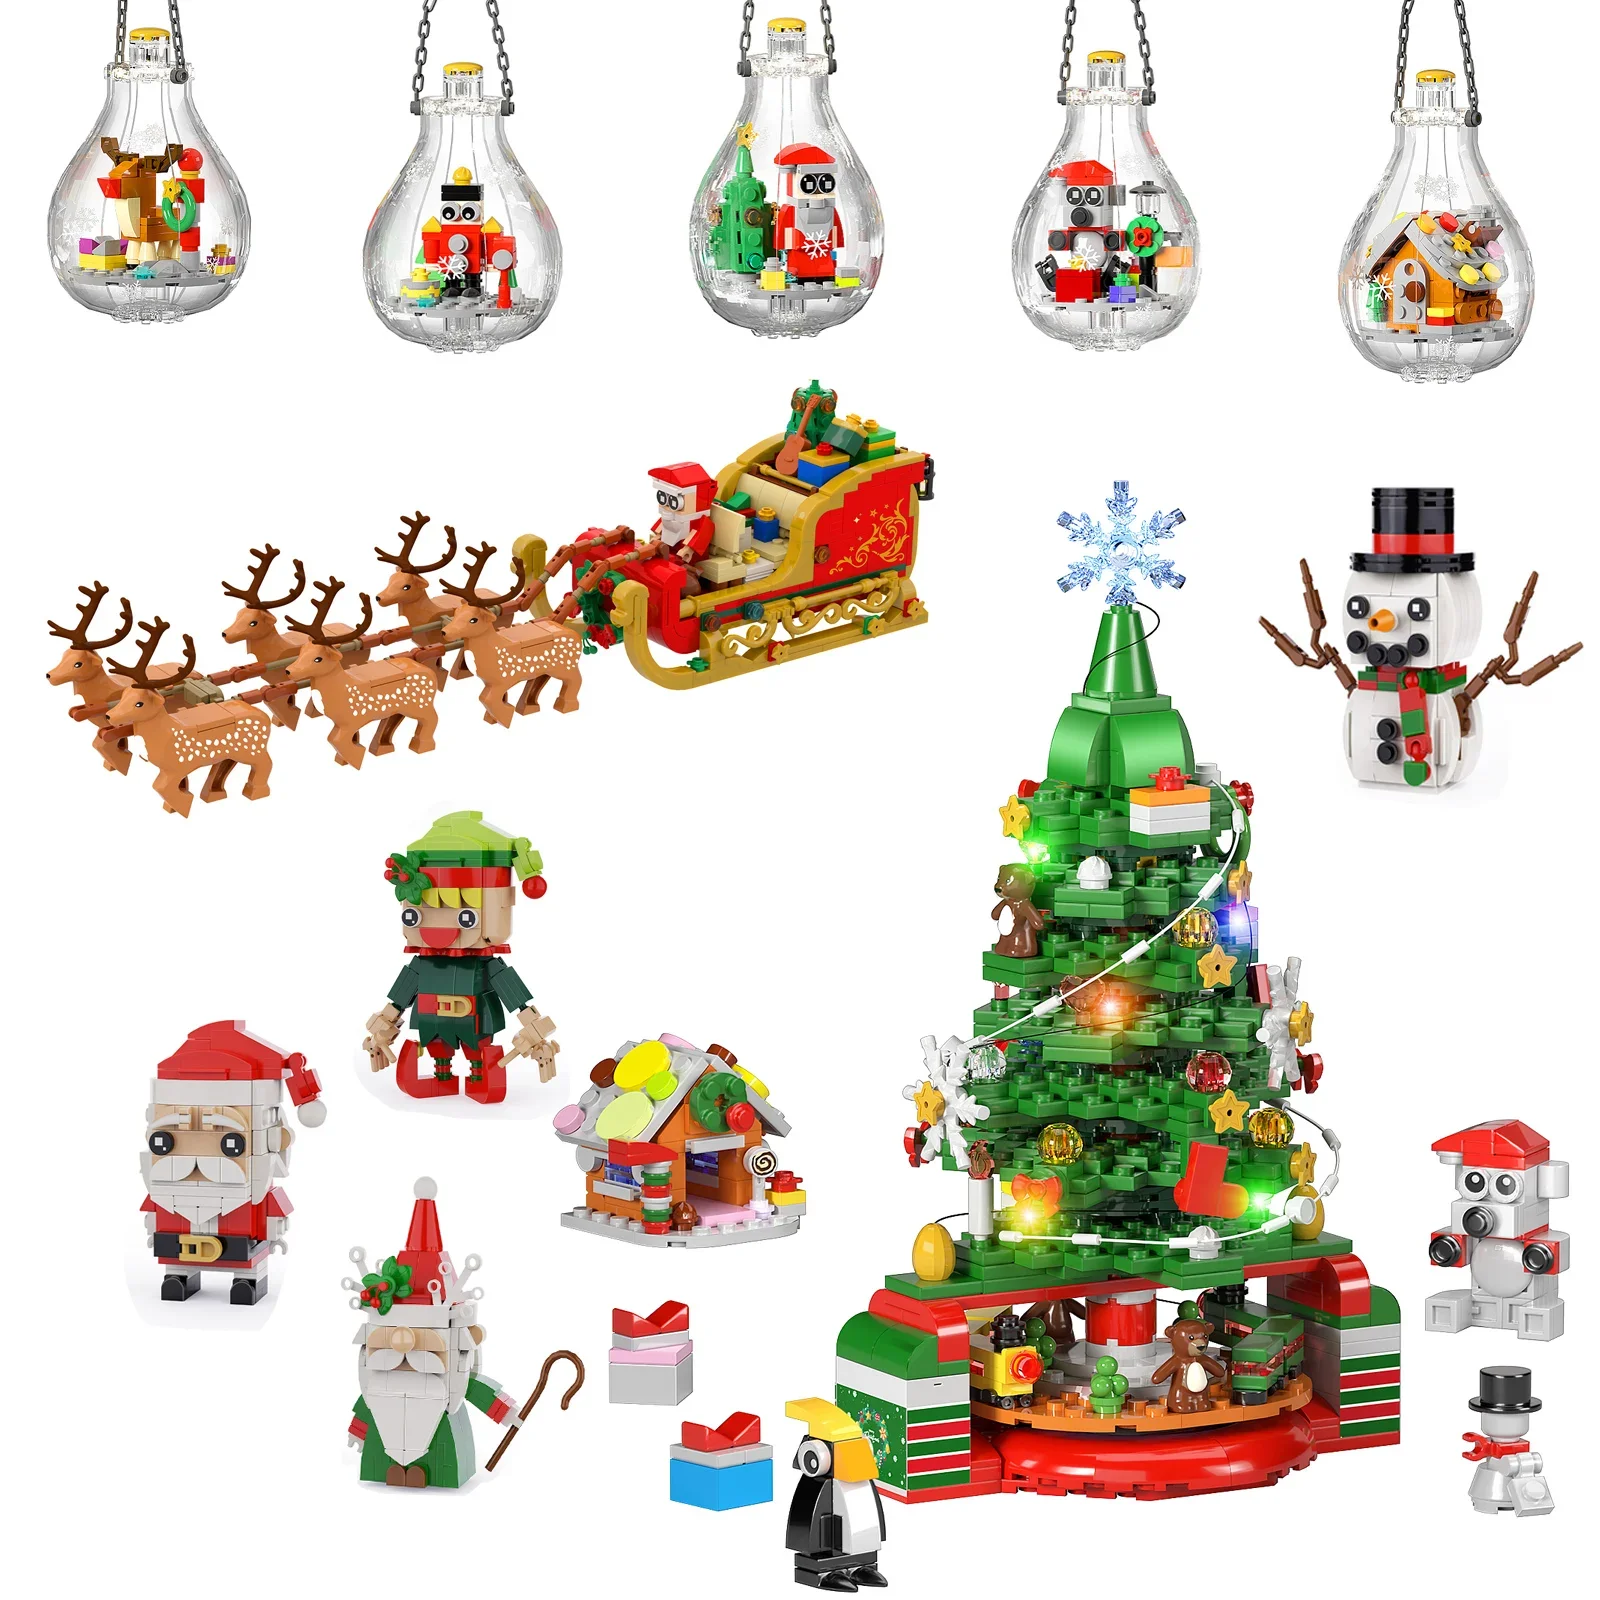 

Дед Мороз сани Снеговик Рождественская елка тематические украшения с бумажным руководством и коробкой для детей Рождество Лучшие подарки на день рождения